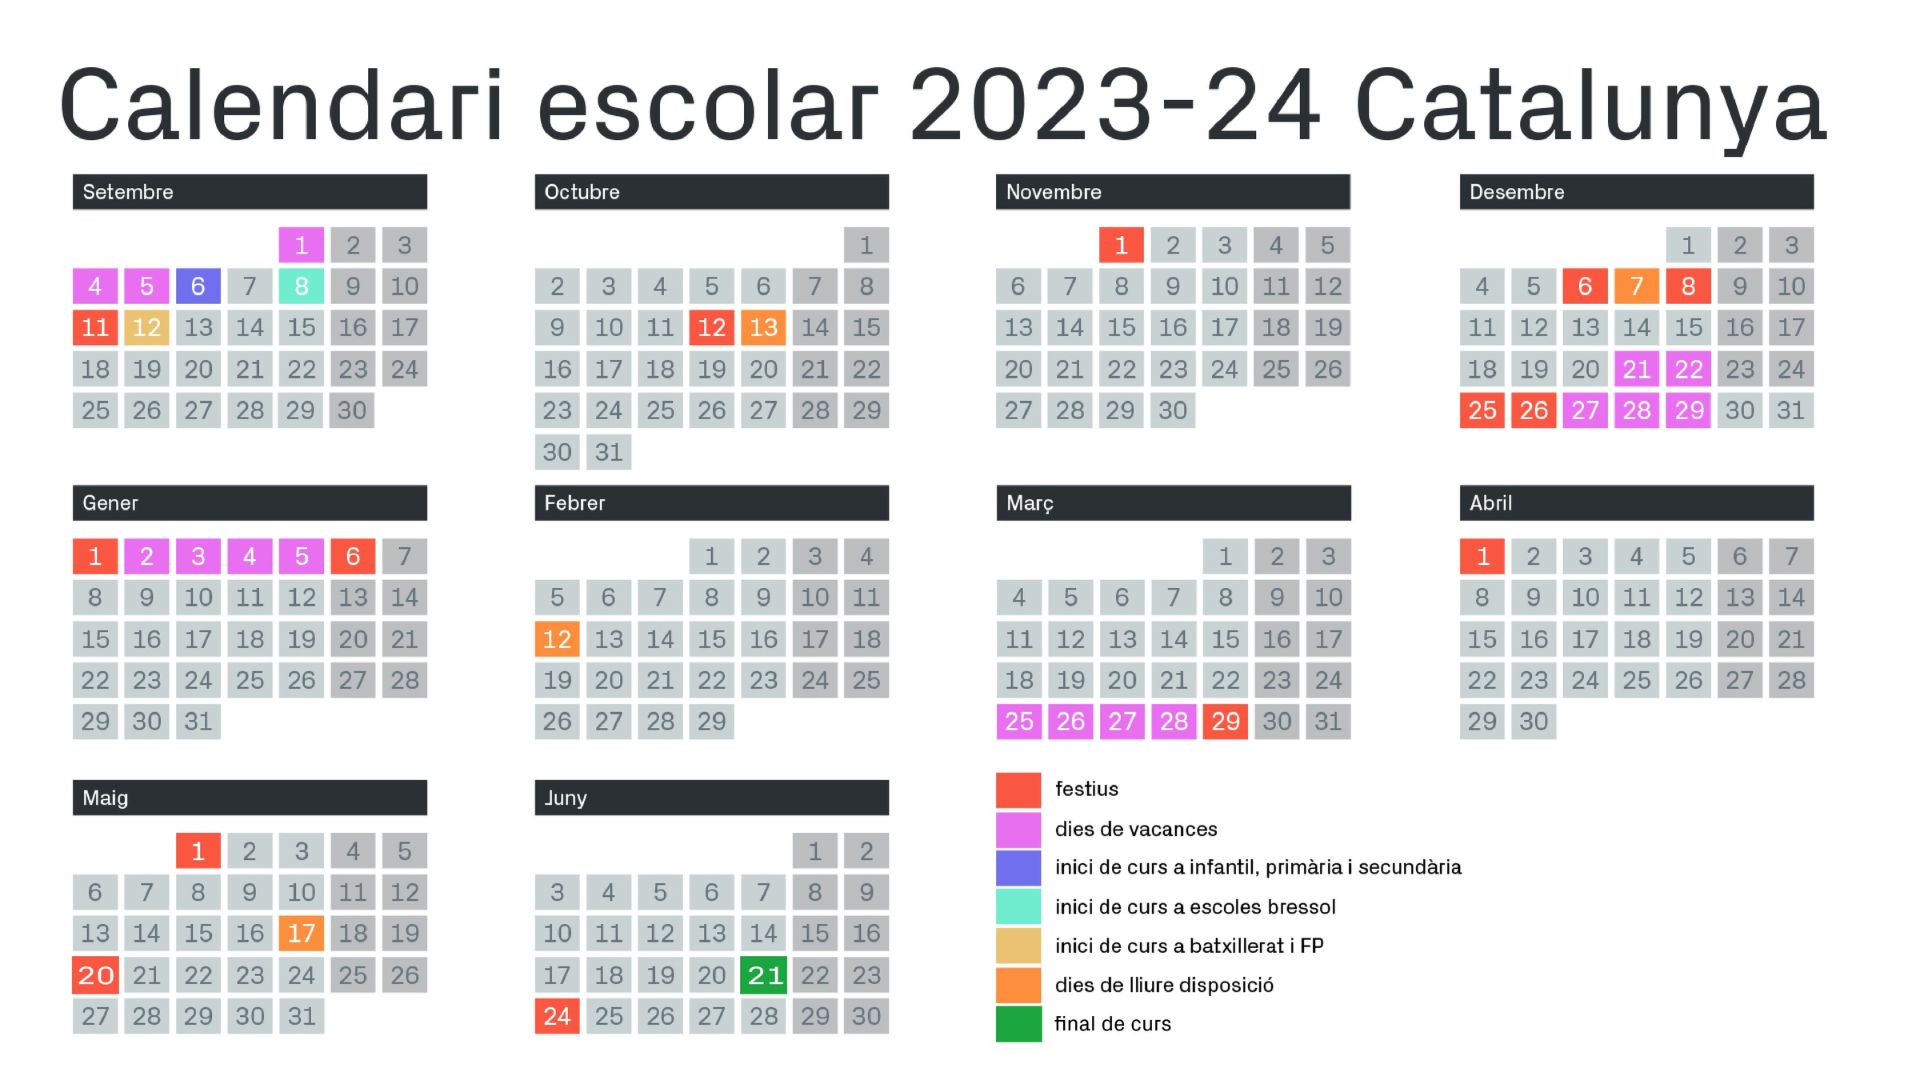 calendari escolar 2023-24 catalunya vacances festius dies lliure disposicio